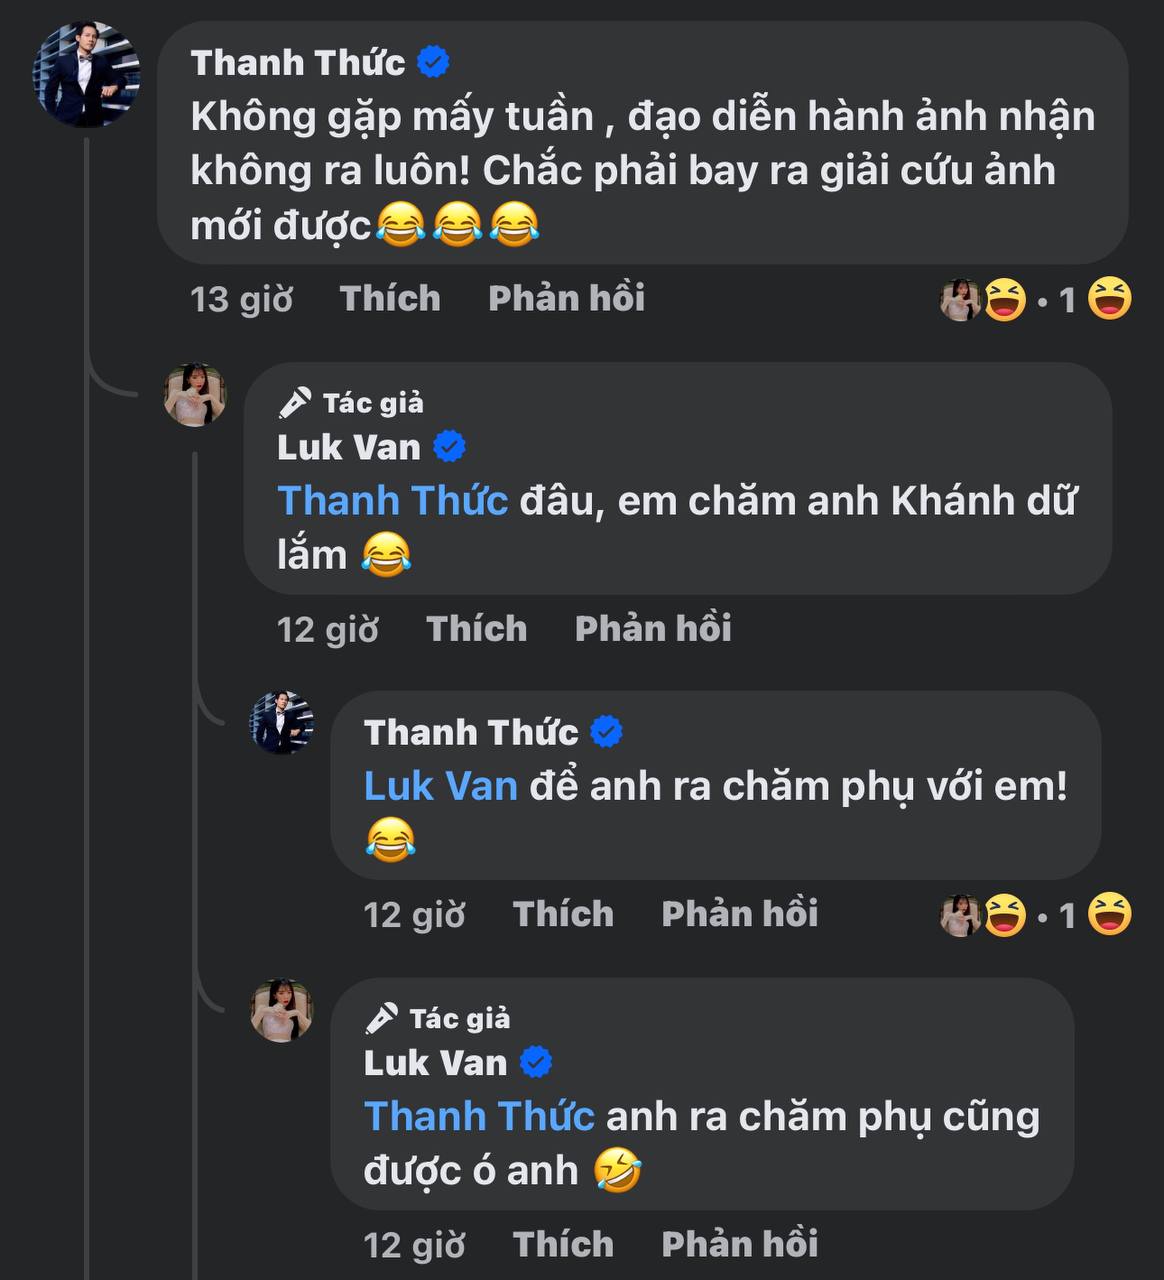 Bình luận hài hước của Thanh Thức và Luk Vân